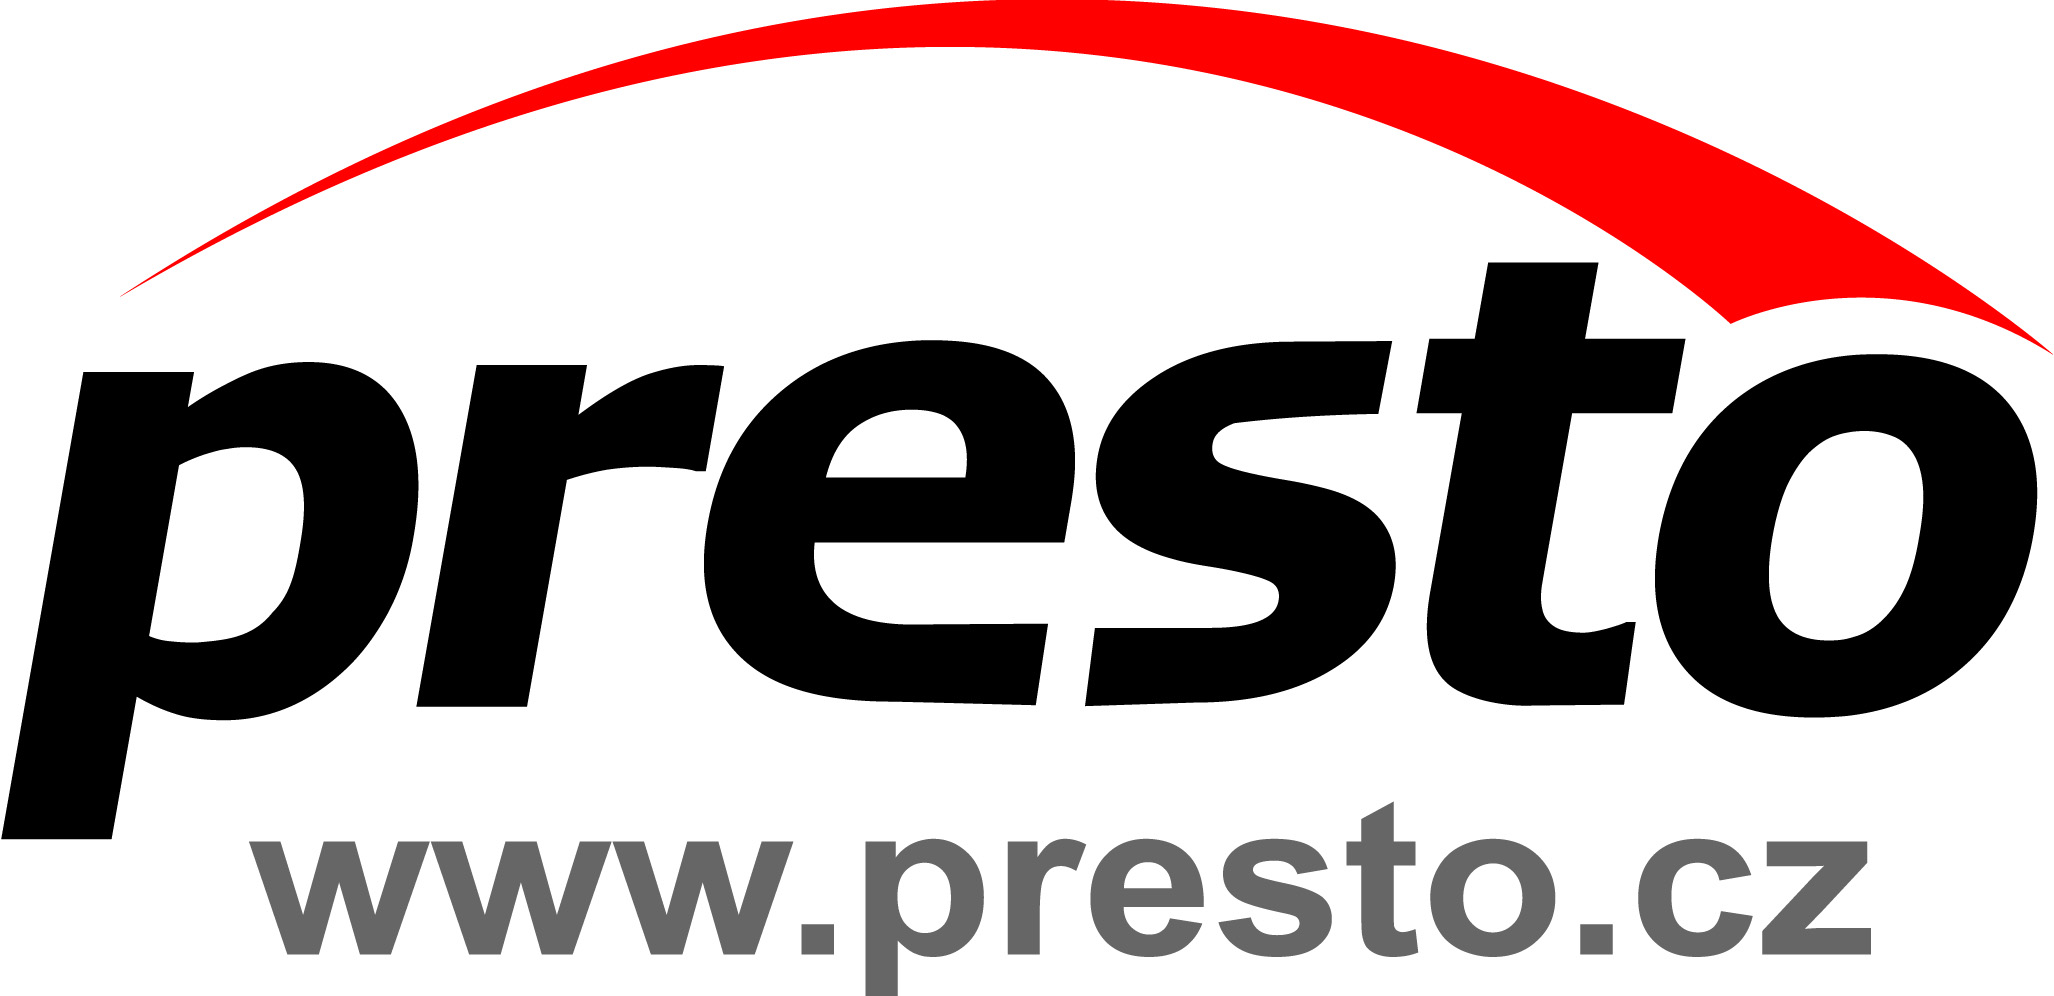 PRESTO - PREKLADATELSKE CENTRUM s.r.o. Logo